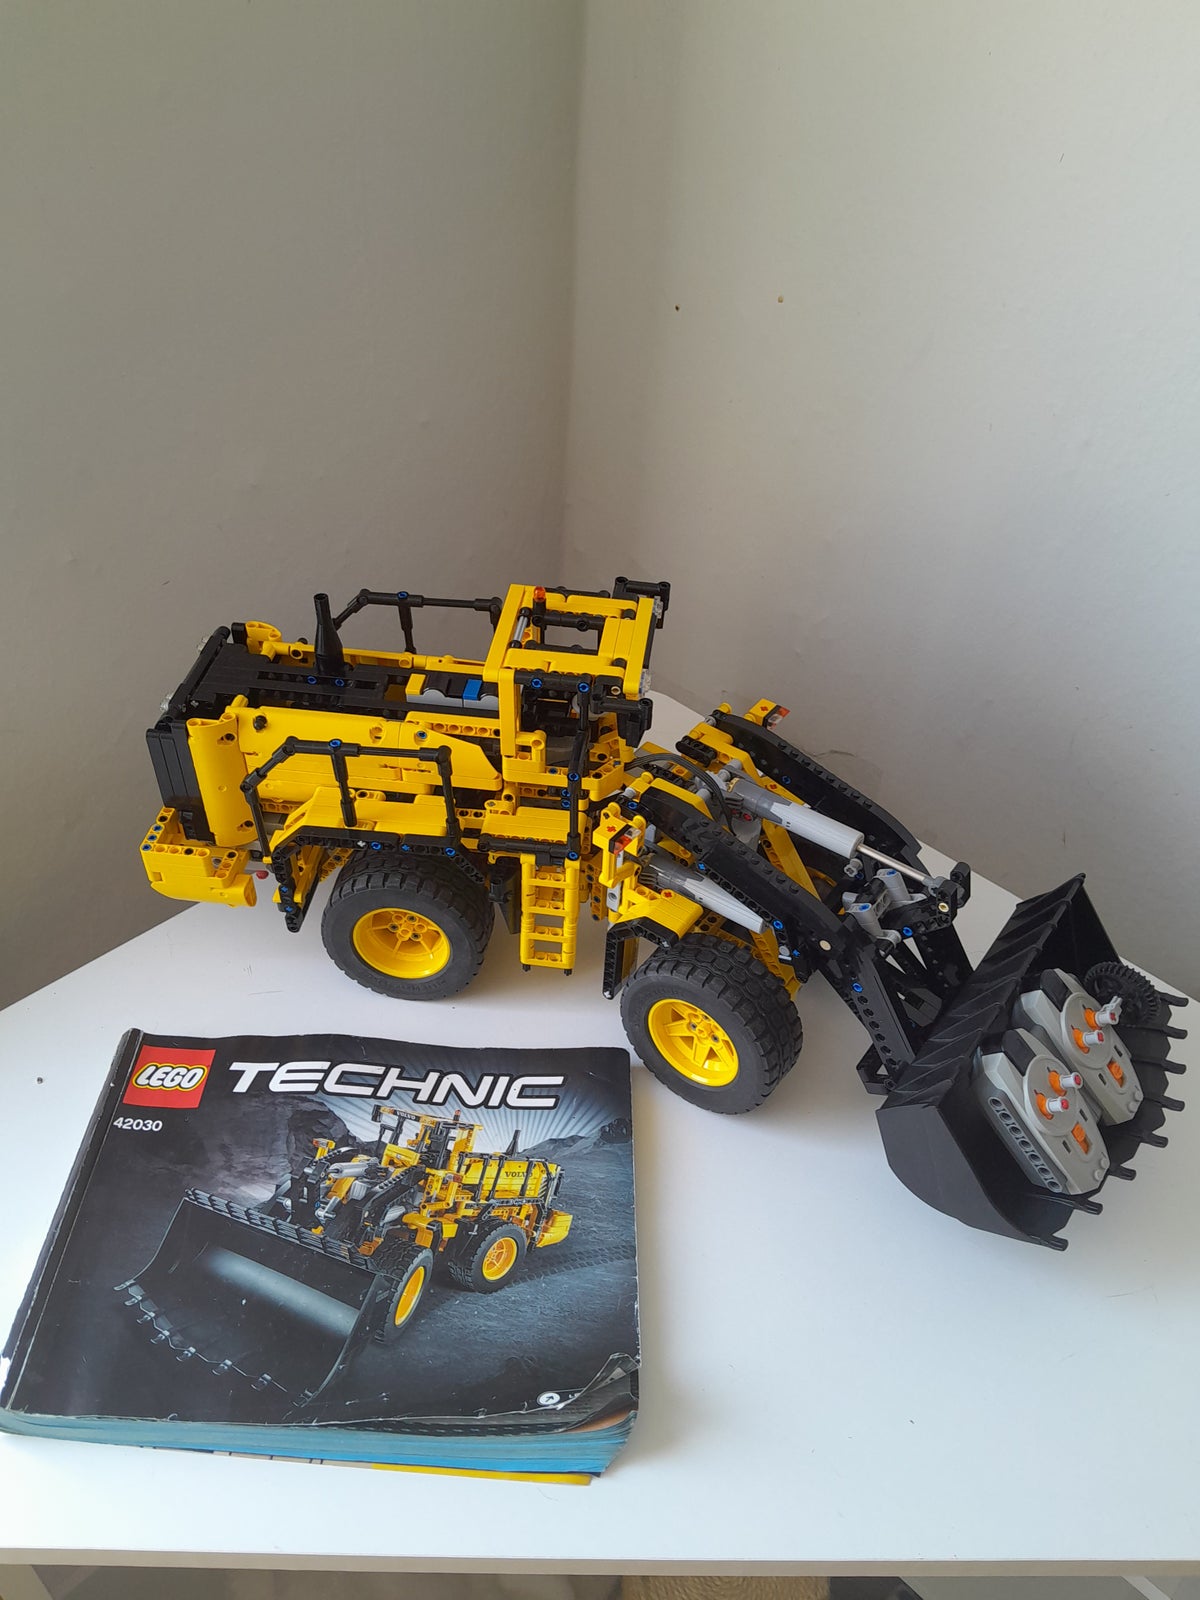 Lego Technic, 42030 – dba.dk – og Salg af Nyt og Brugt